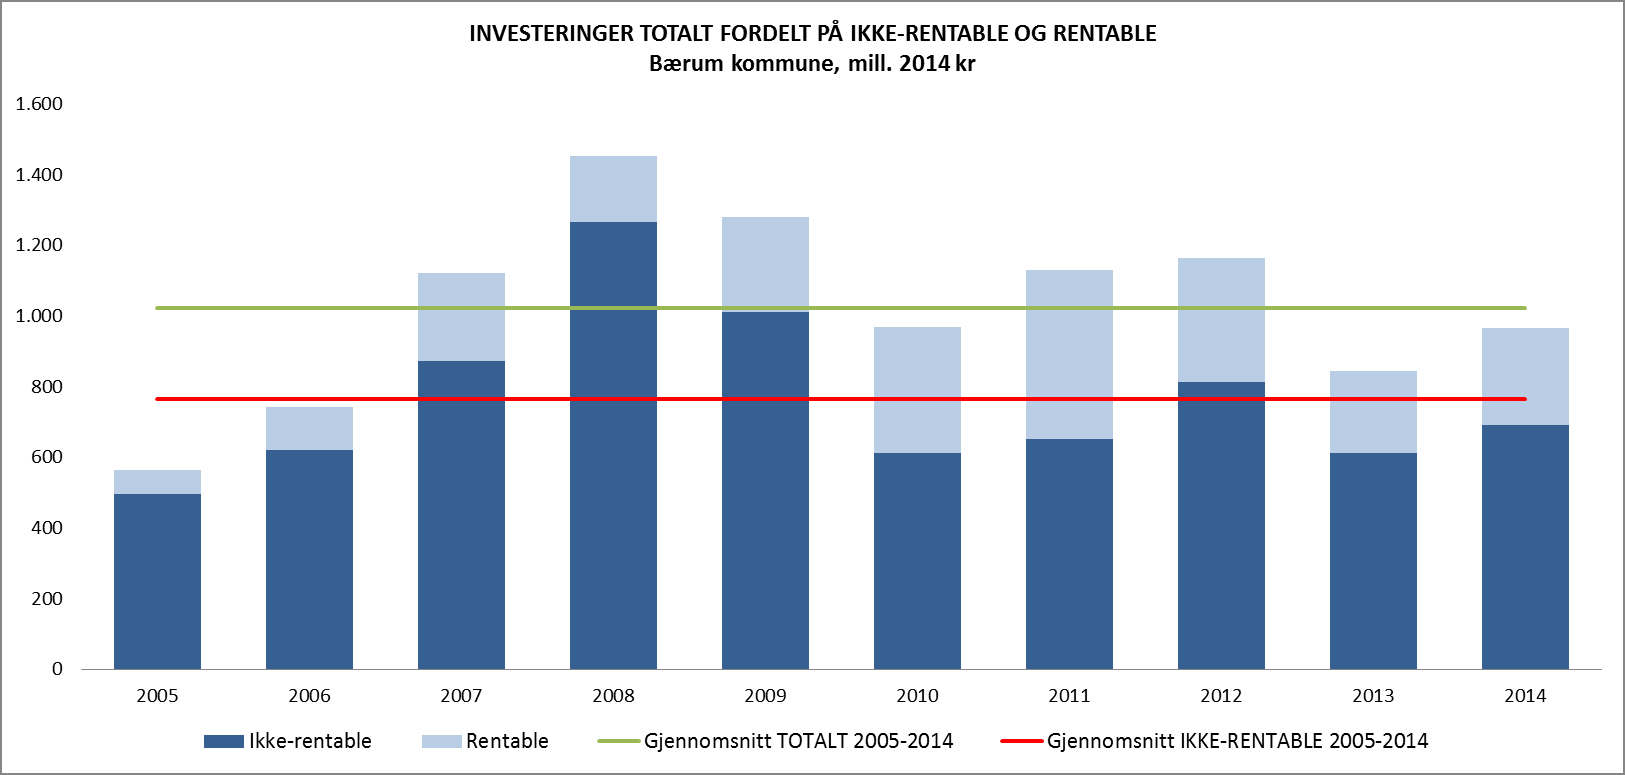 Høyt investeringsnivå Investeringsaktiviteten har vært høy i perioden med gjennomsnittlig investeringsnivå for ikkerentable investeringer (investeringer som ikke er selvfinansierende) på i underkant